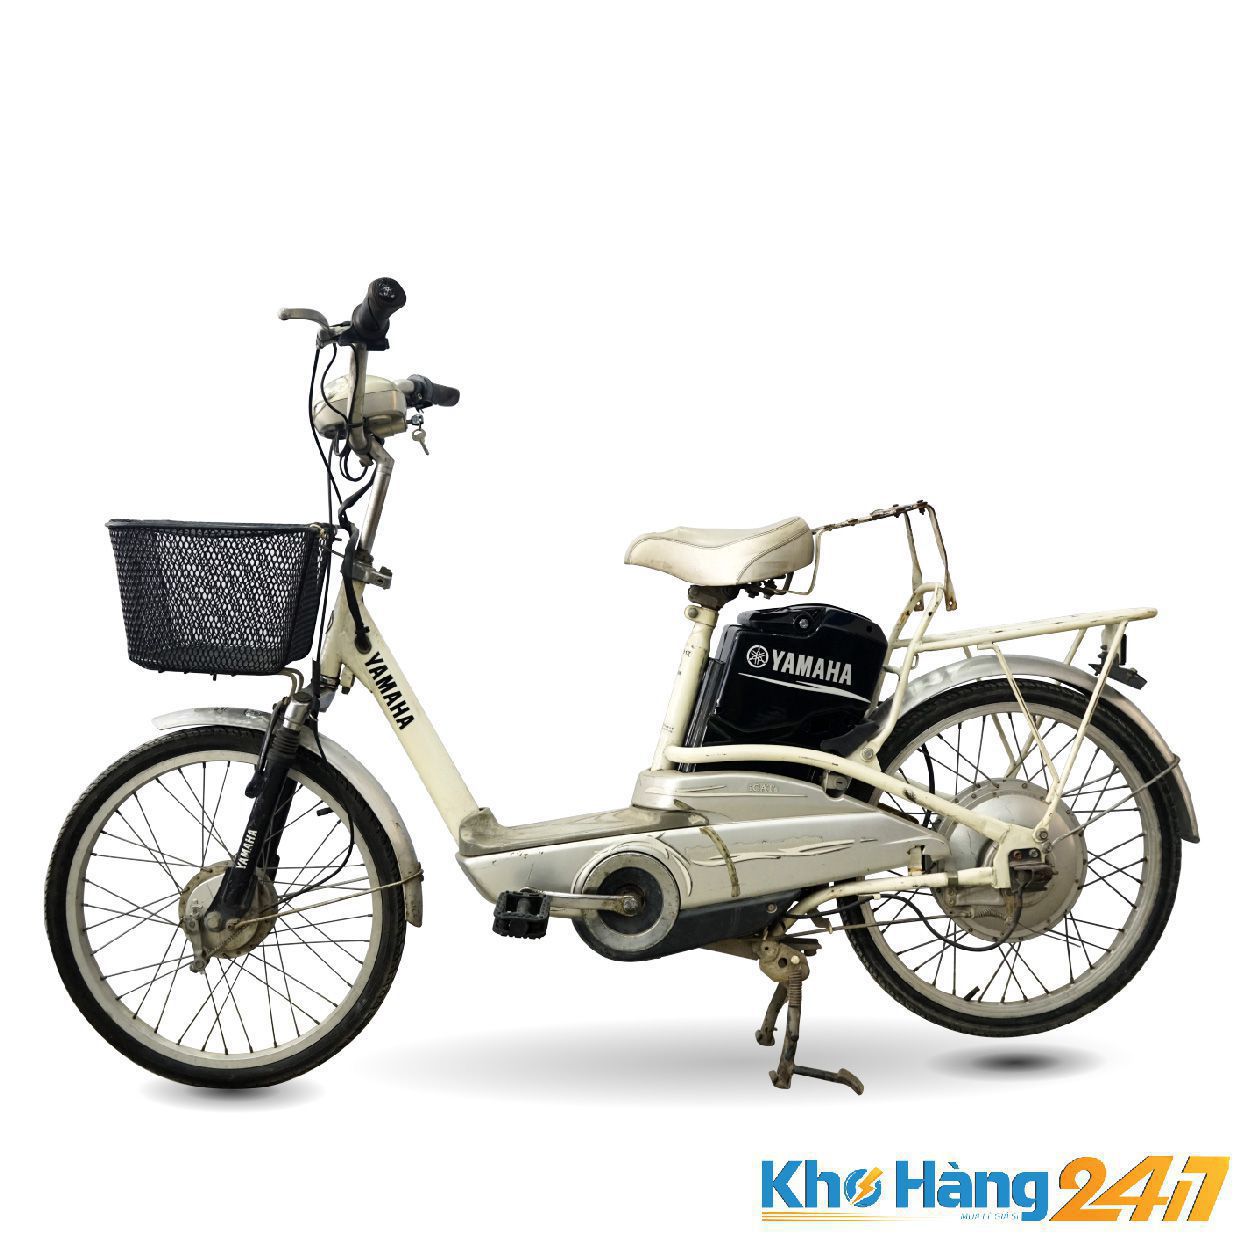 XE DAP DIEN YAMAHA ICATs 01 1 - Mua xe đạp điện cũ giá rẻ TpHCM chính hãng uy tín chất lượng